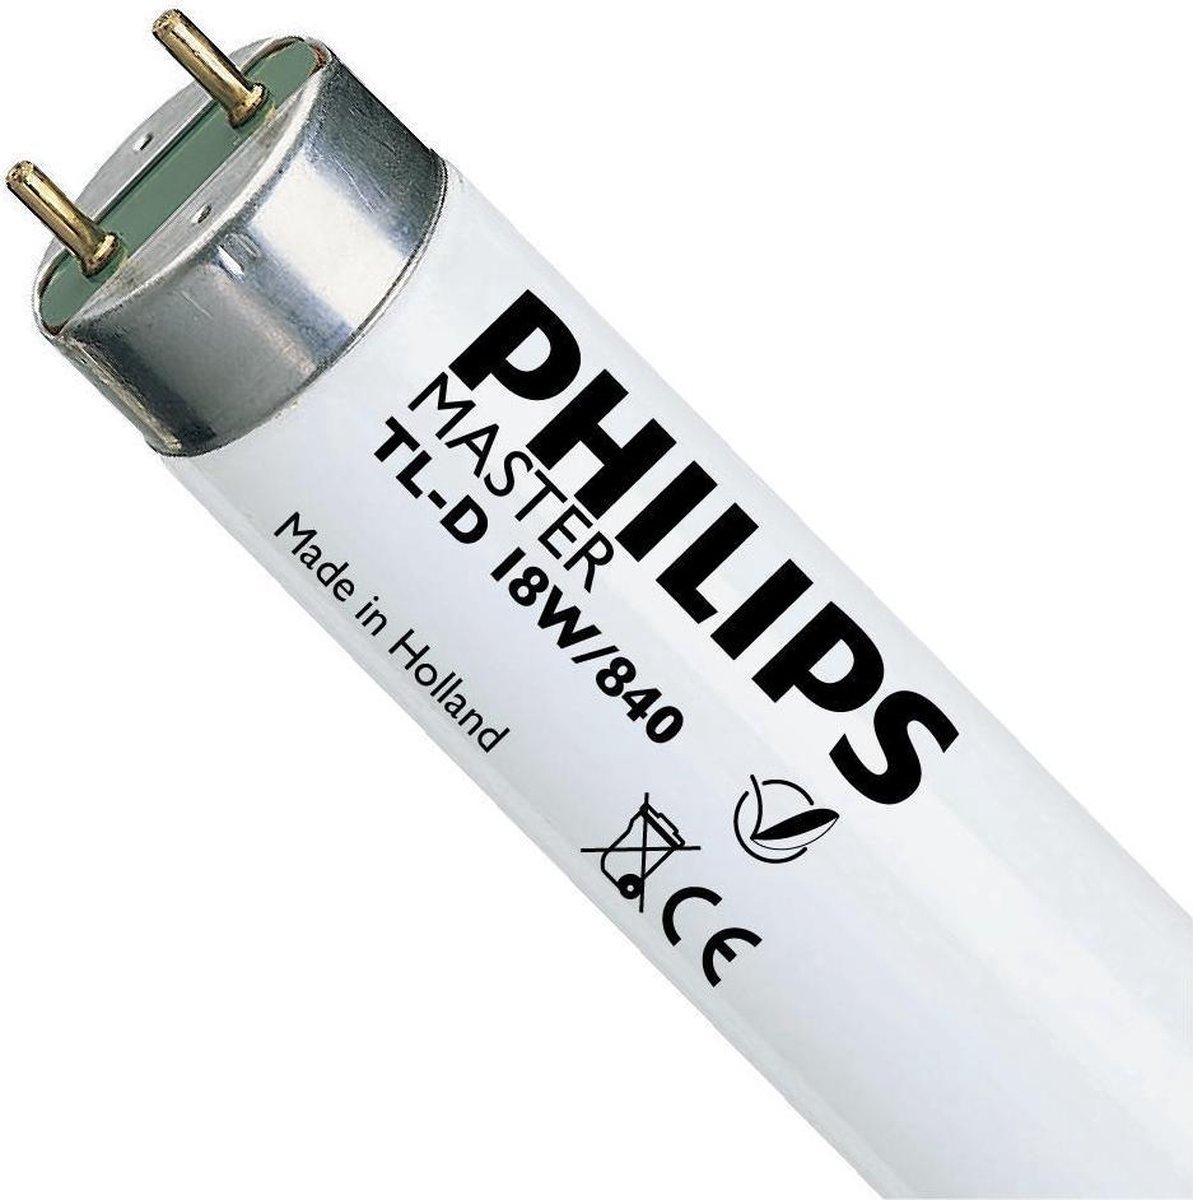 Philips TL-D Super 80 TL-lamp G13 - 18W - Koel Wit Licht - Niet Dimbaar - Philips